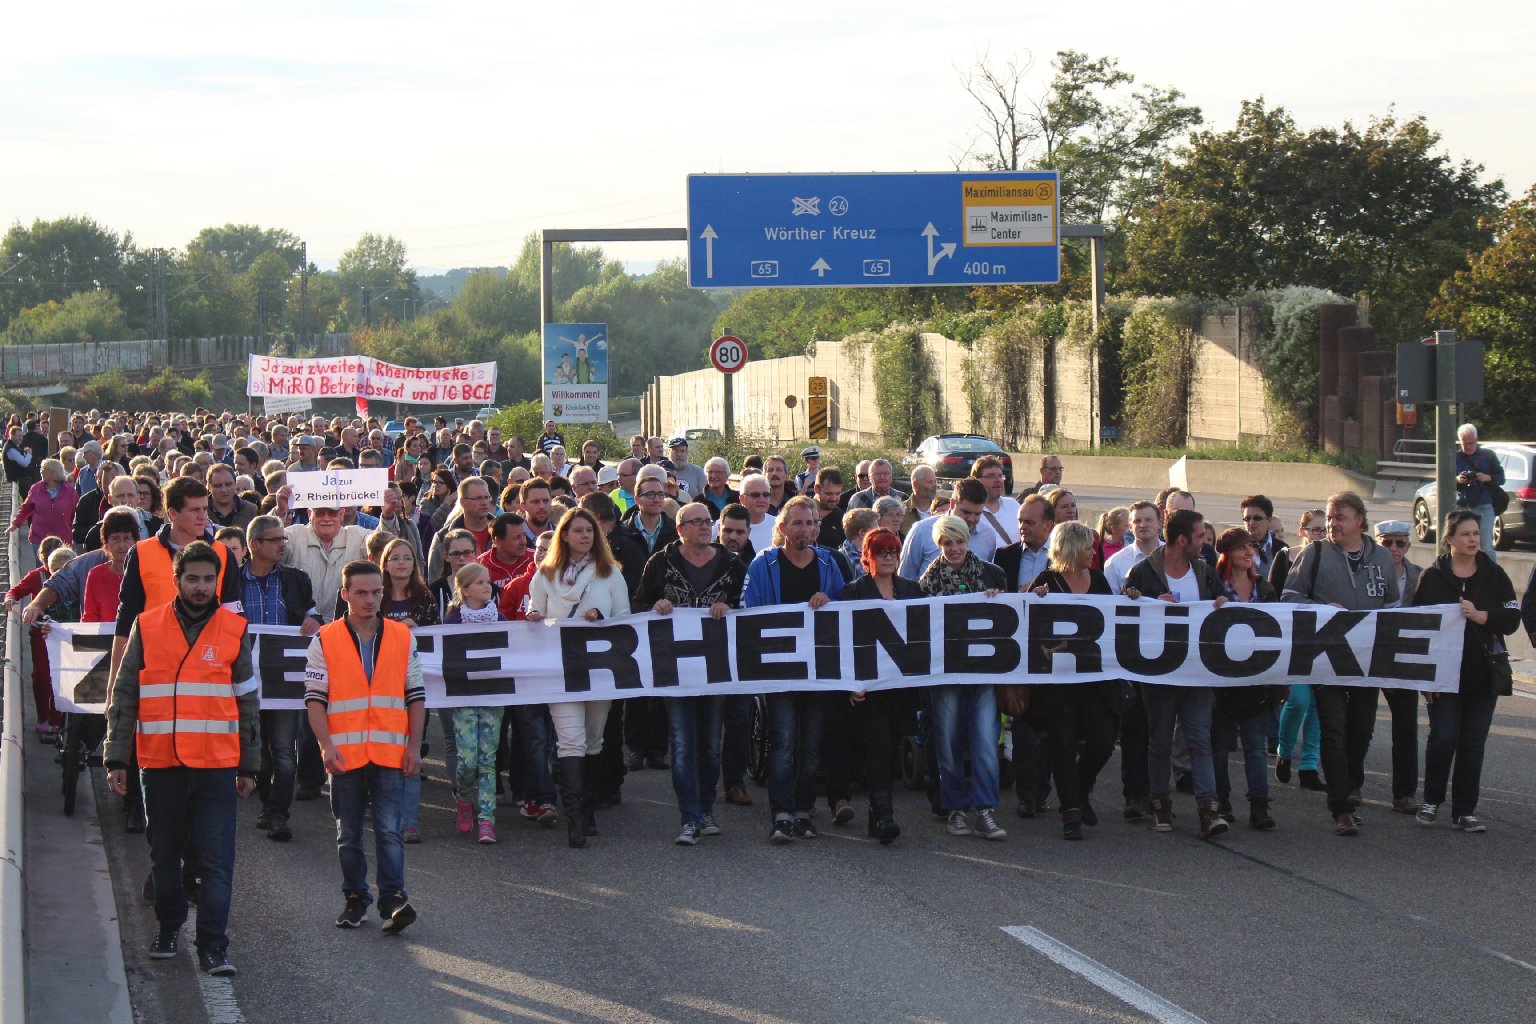 Demonstranten-Lindwurm: Deutliches Signal für die zweite Rheinbrücke. Fotos: pfalz-express.de/Licht